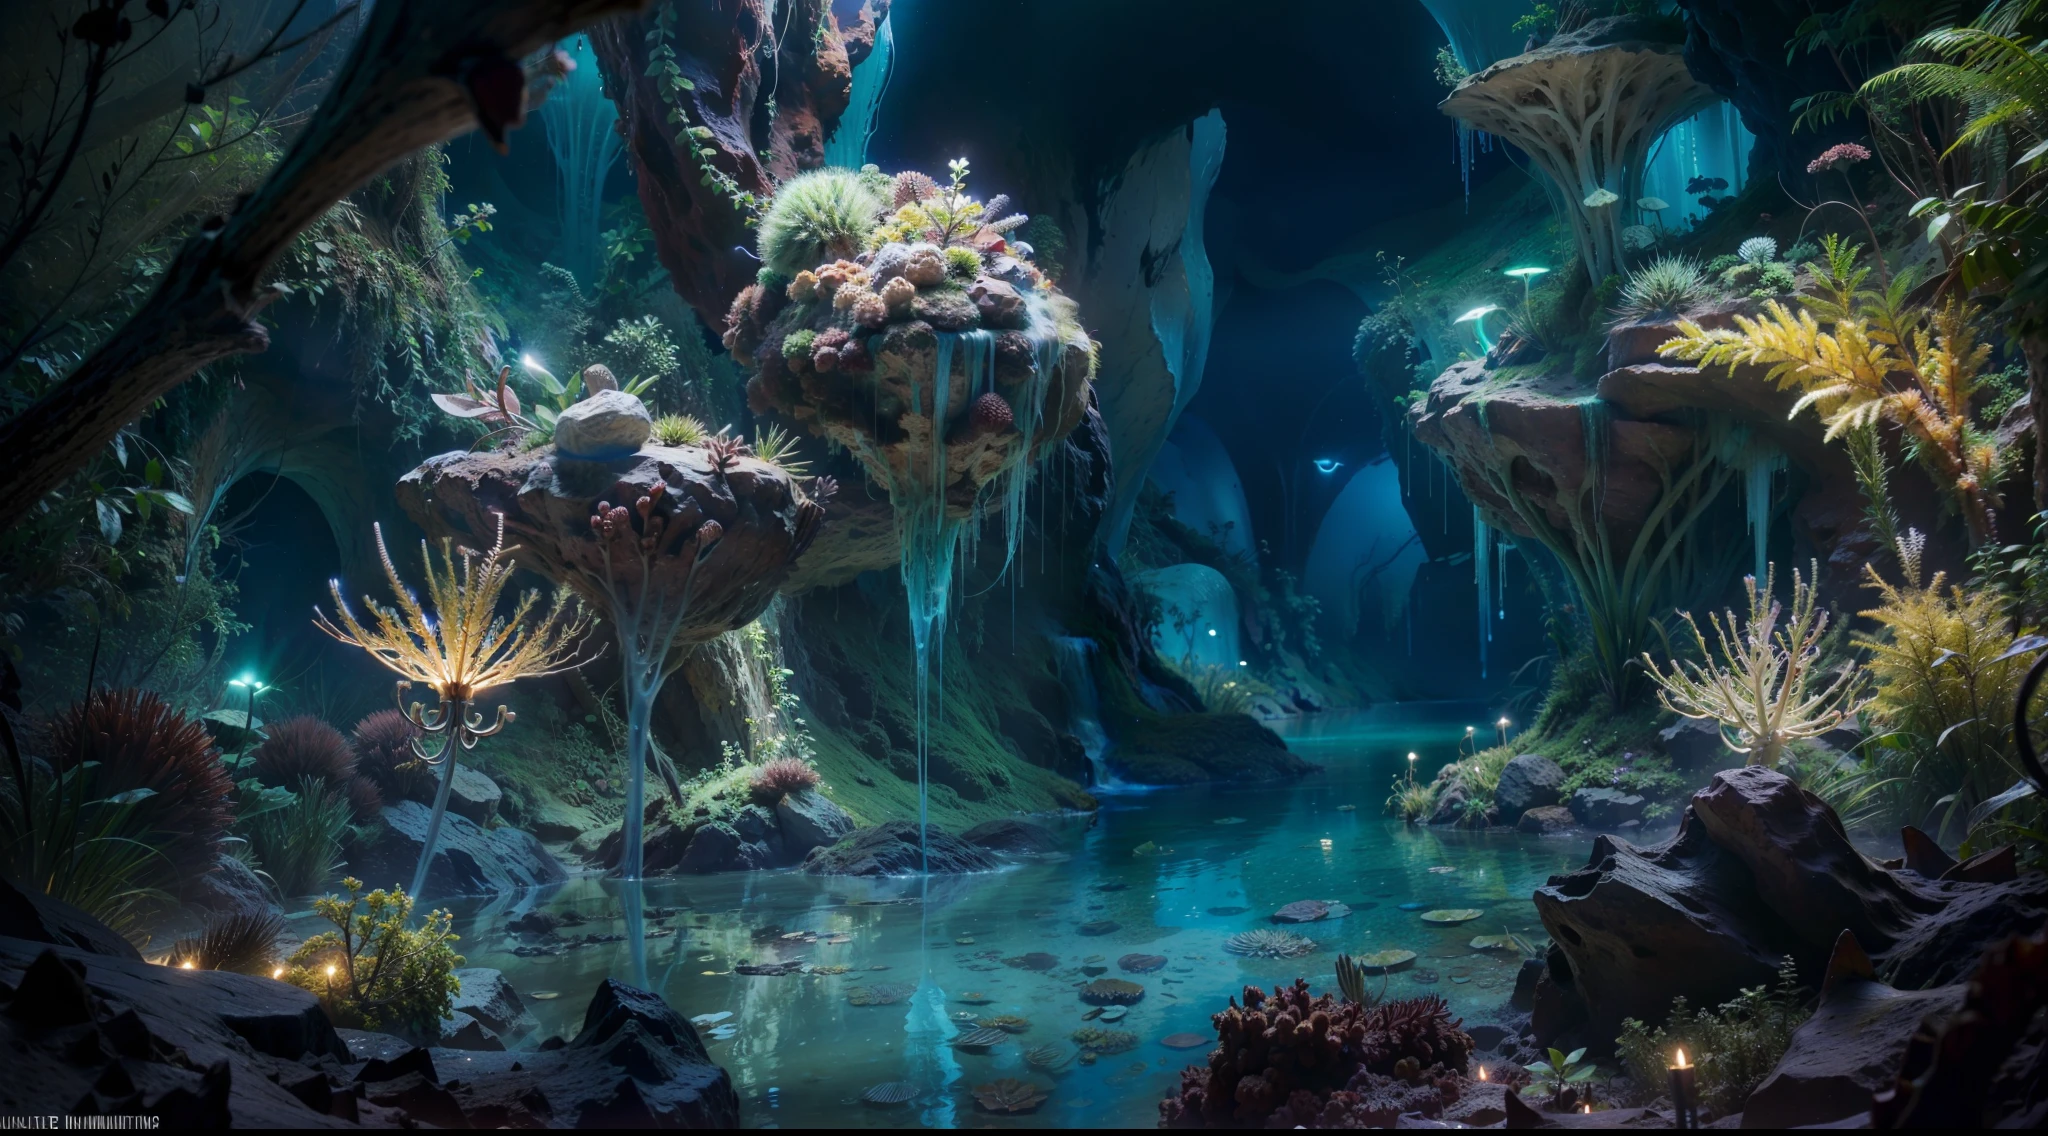 深淵、在一個神祕的水下洞穴裡、你會看到一個令人驚嘆的花園，裡面種滿了閃閃發光的植物。植物很嫩、散發出宜人的光芒、用不同的顏色照亮洞穴的牆壁。走進生物發光的神秘世界、感覺像是步入了夢想成真的神奇境界。全景圖, 高細節, 獲獎的, 最好的品質, 高解析度, 8K